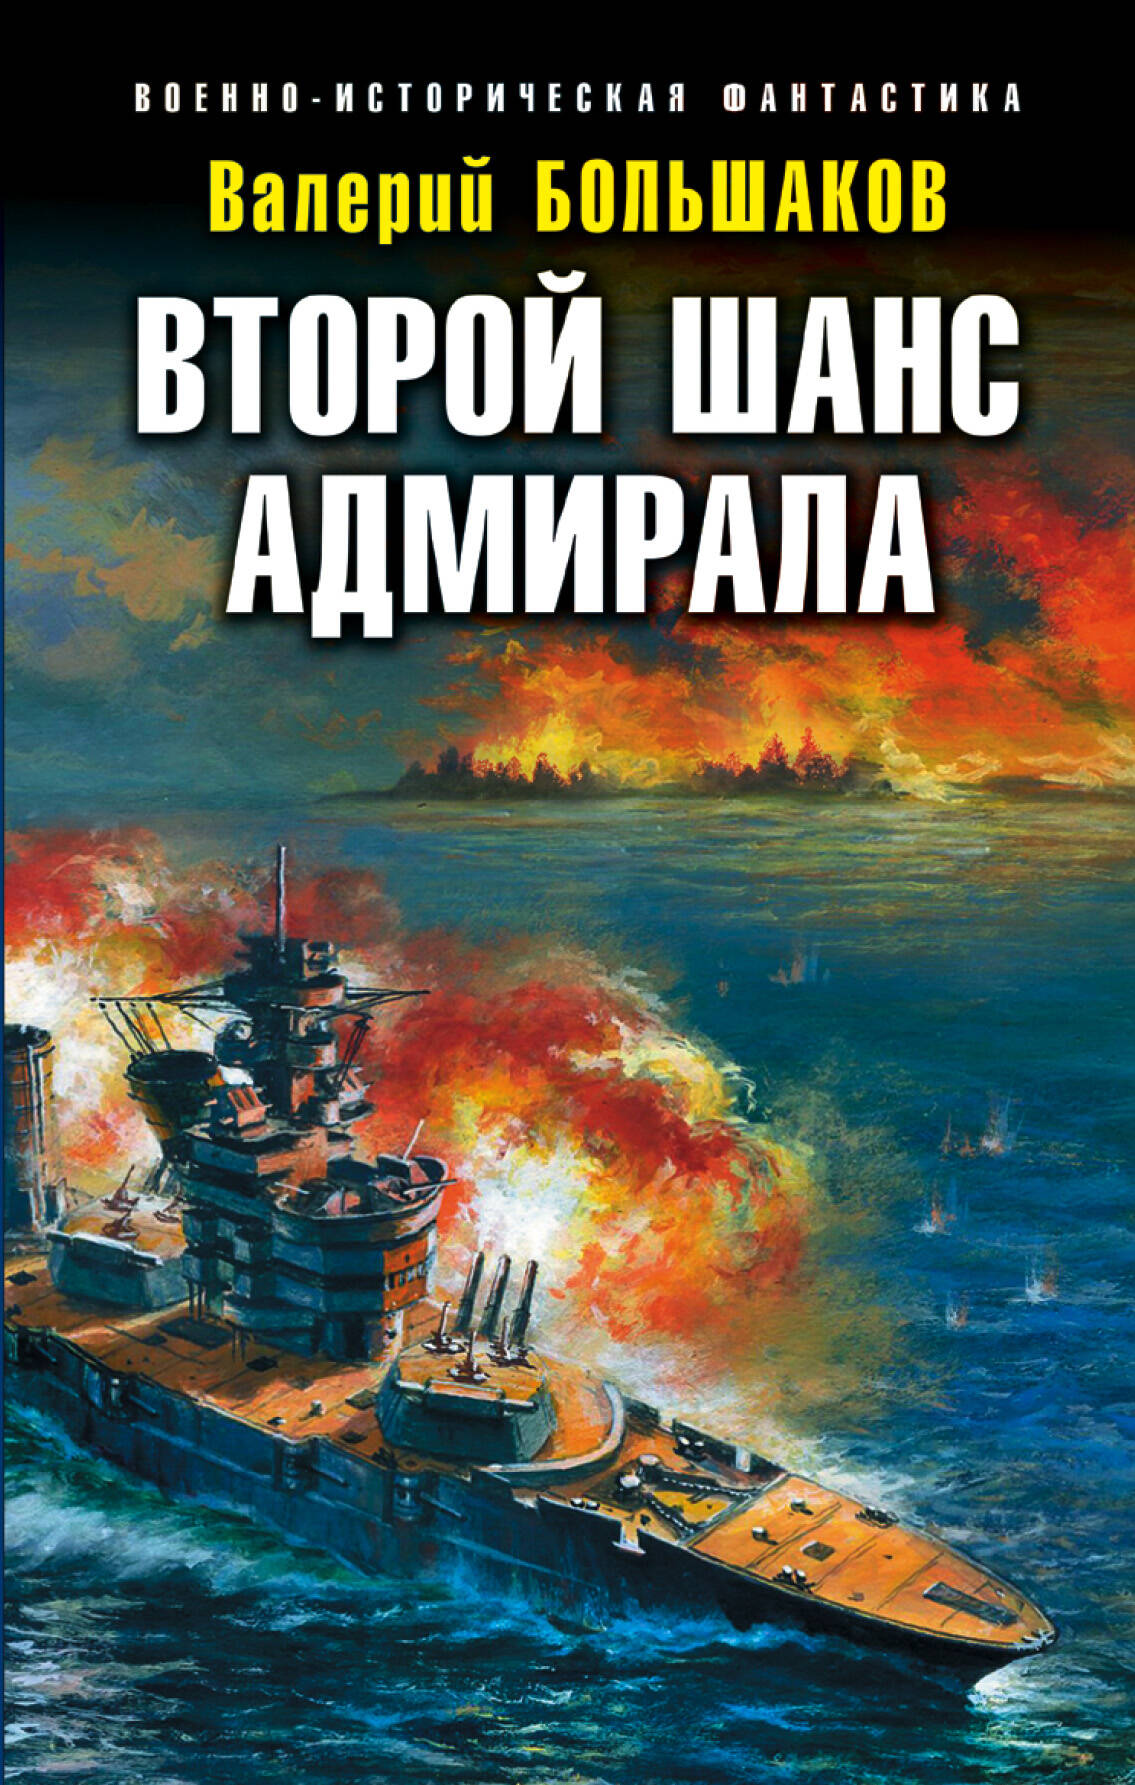 Большаков Валерий Петрович - Второй шанс адмирала